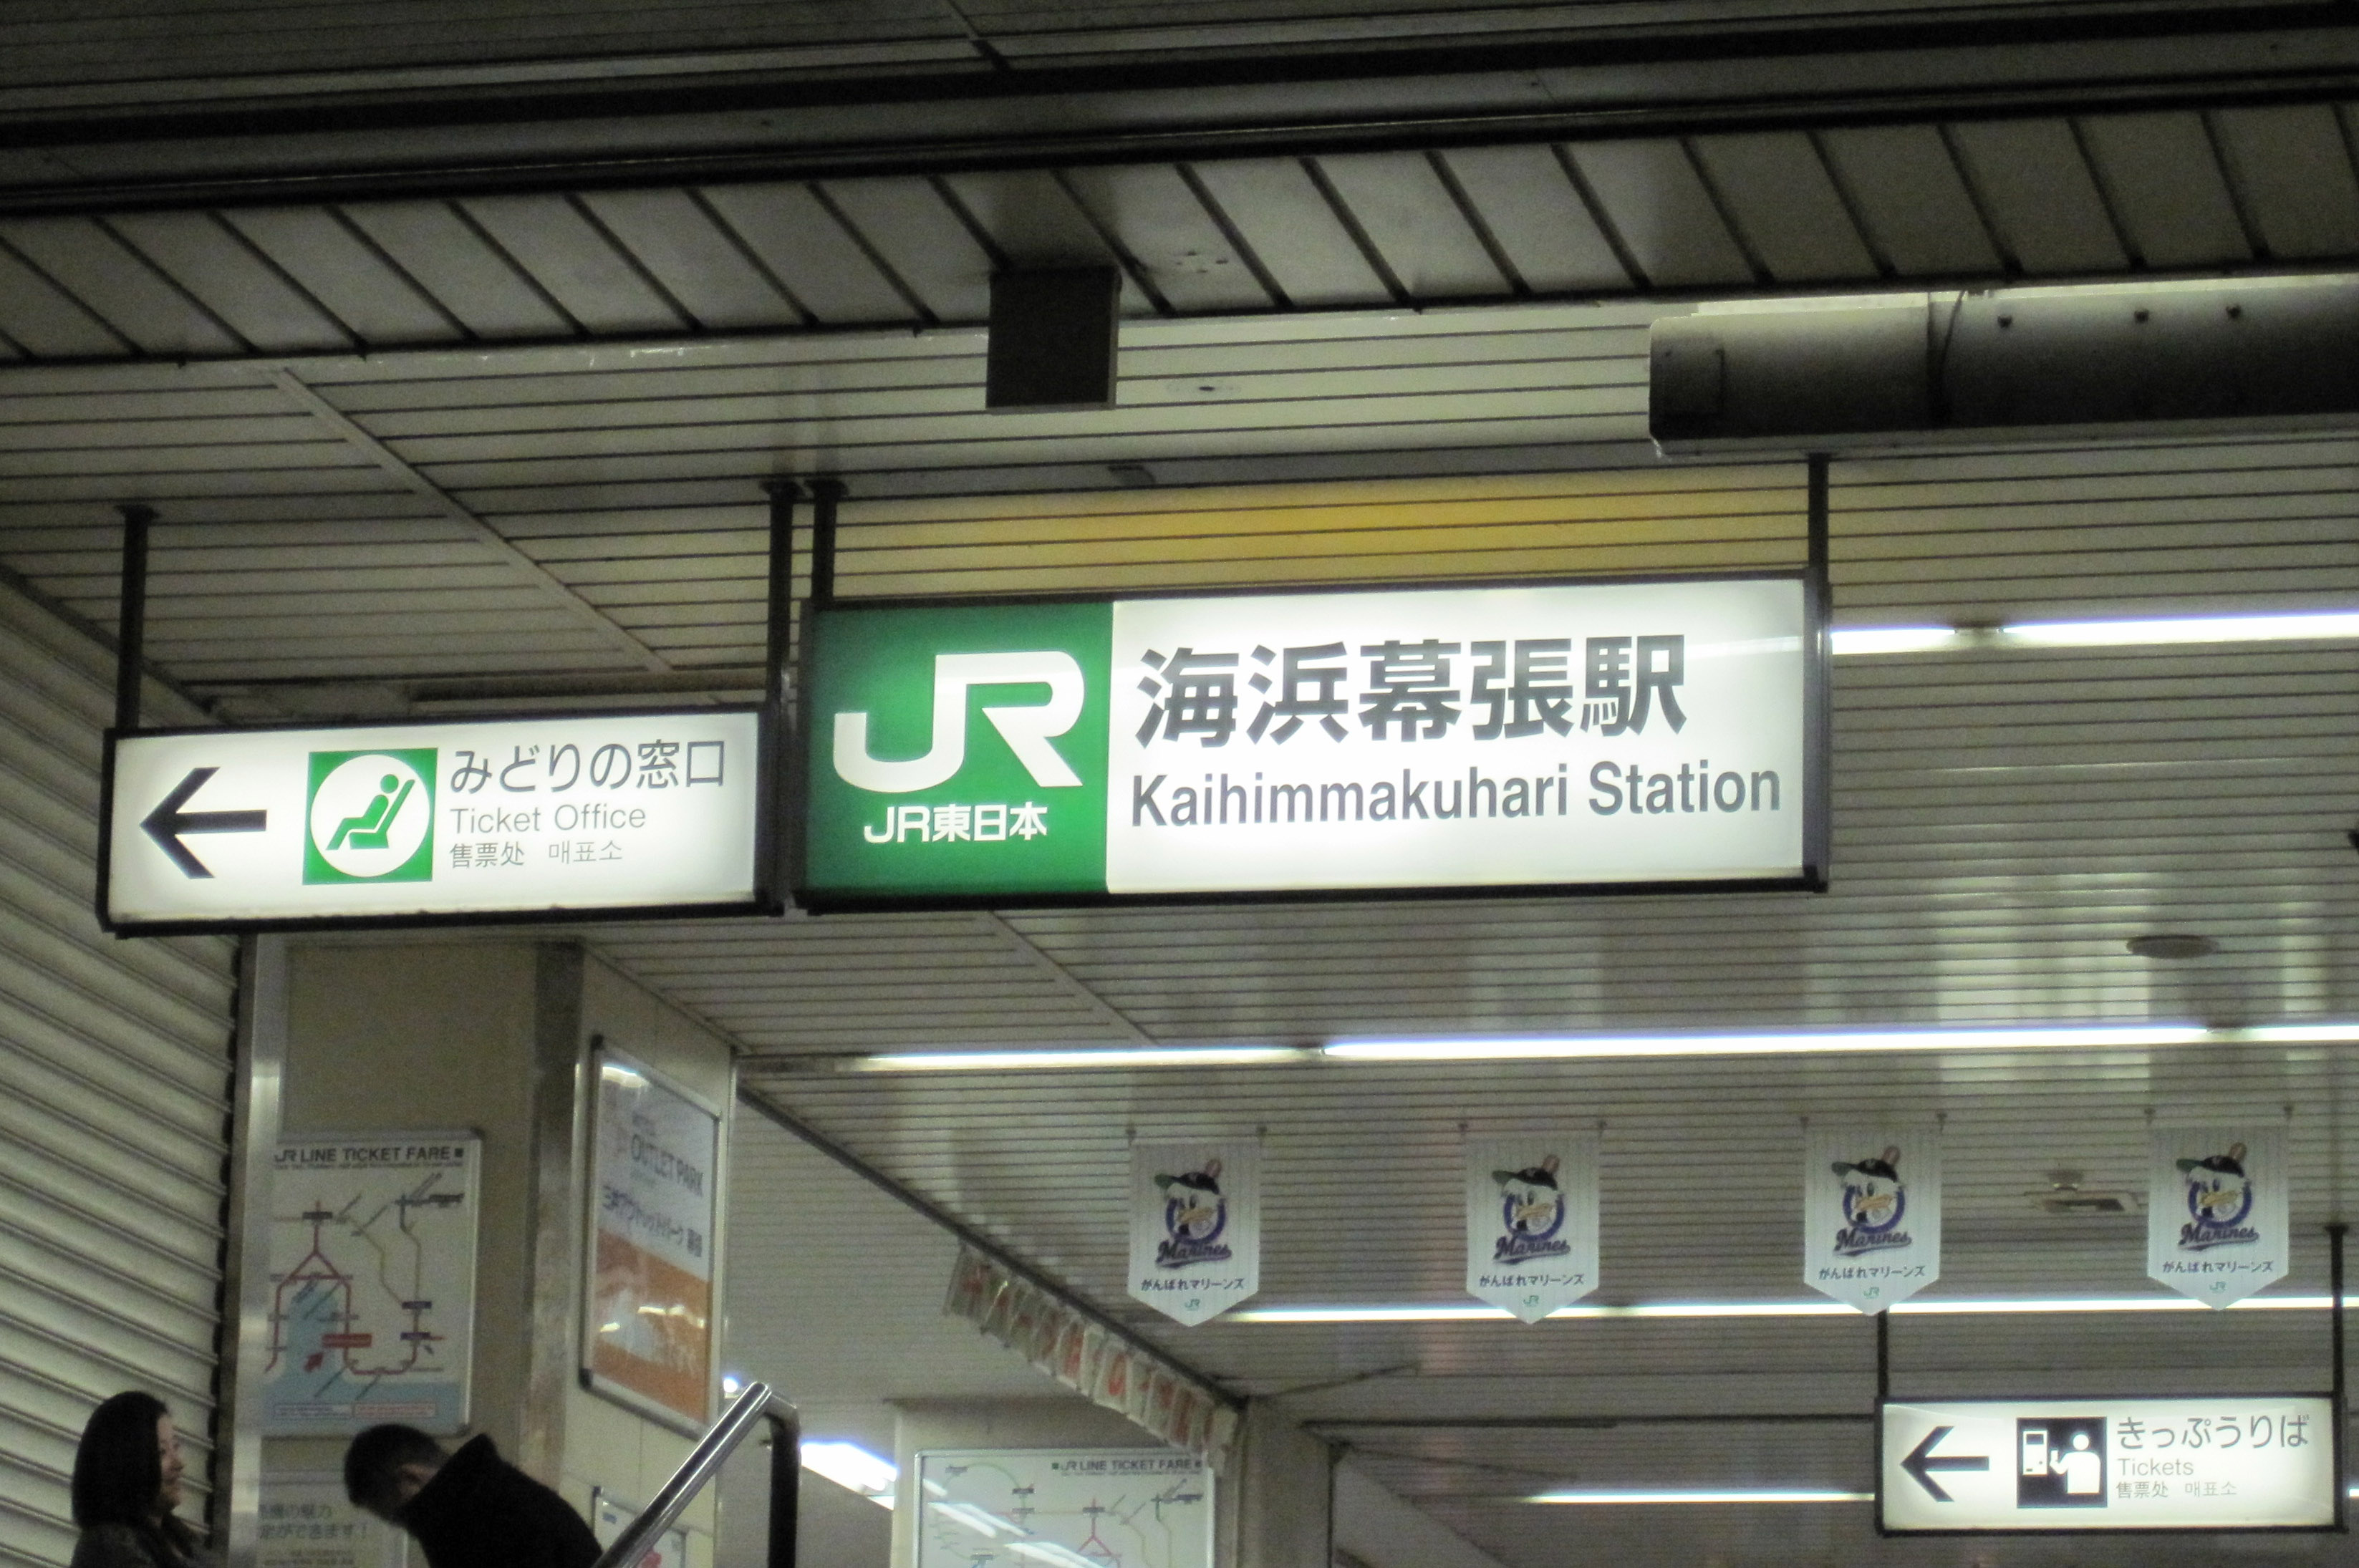 Estación Kaihimmakuhari